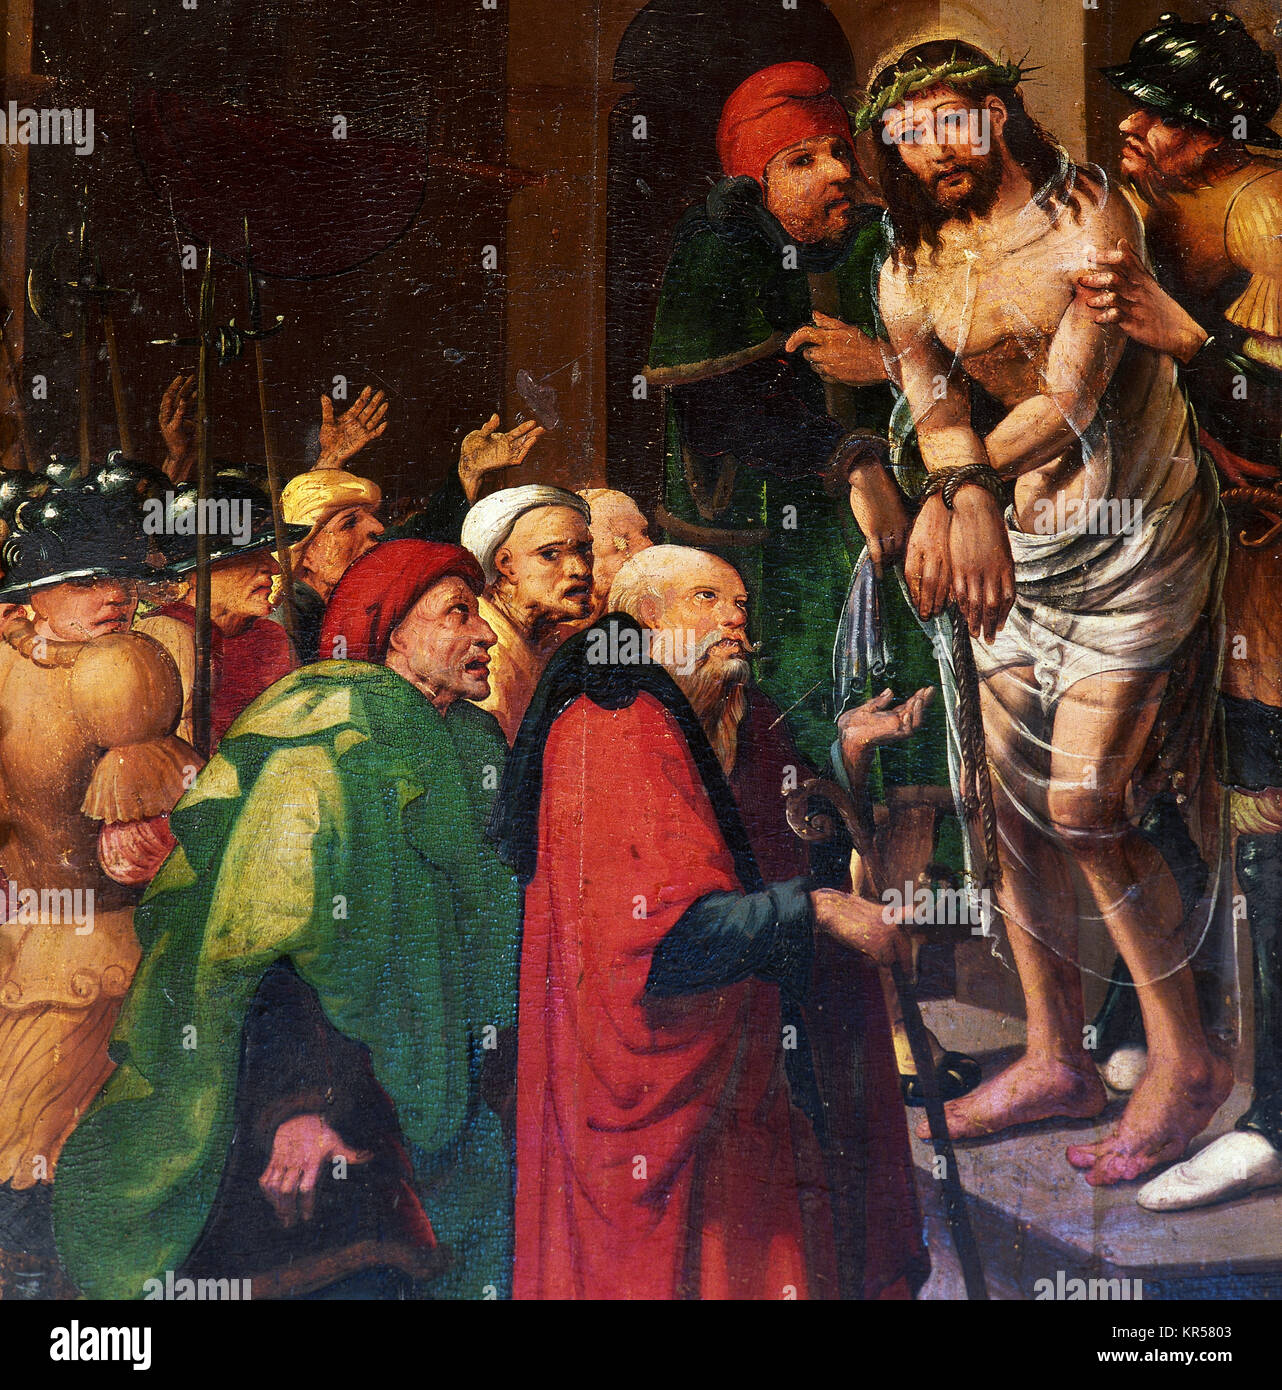 Pedro de Aponte ( ?-1530). Peintre espagnol. Renaissance. Altarpice d'église de Corella, 1525-1530. Détail : Ecce Homo. Navare, Espagne. Banque D'Images